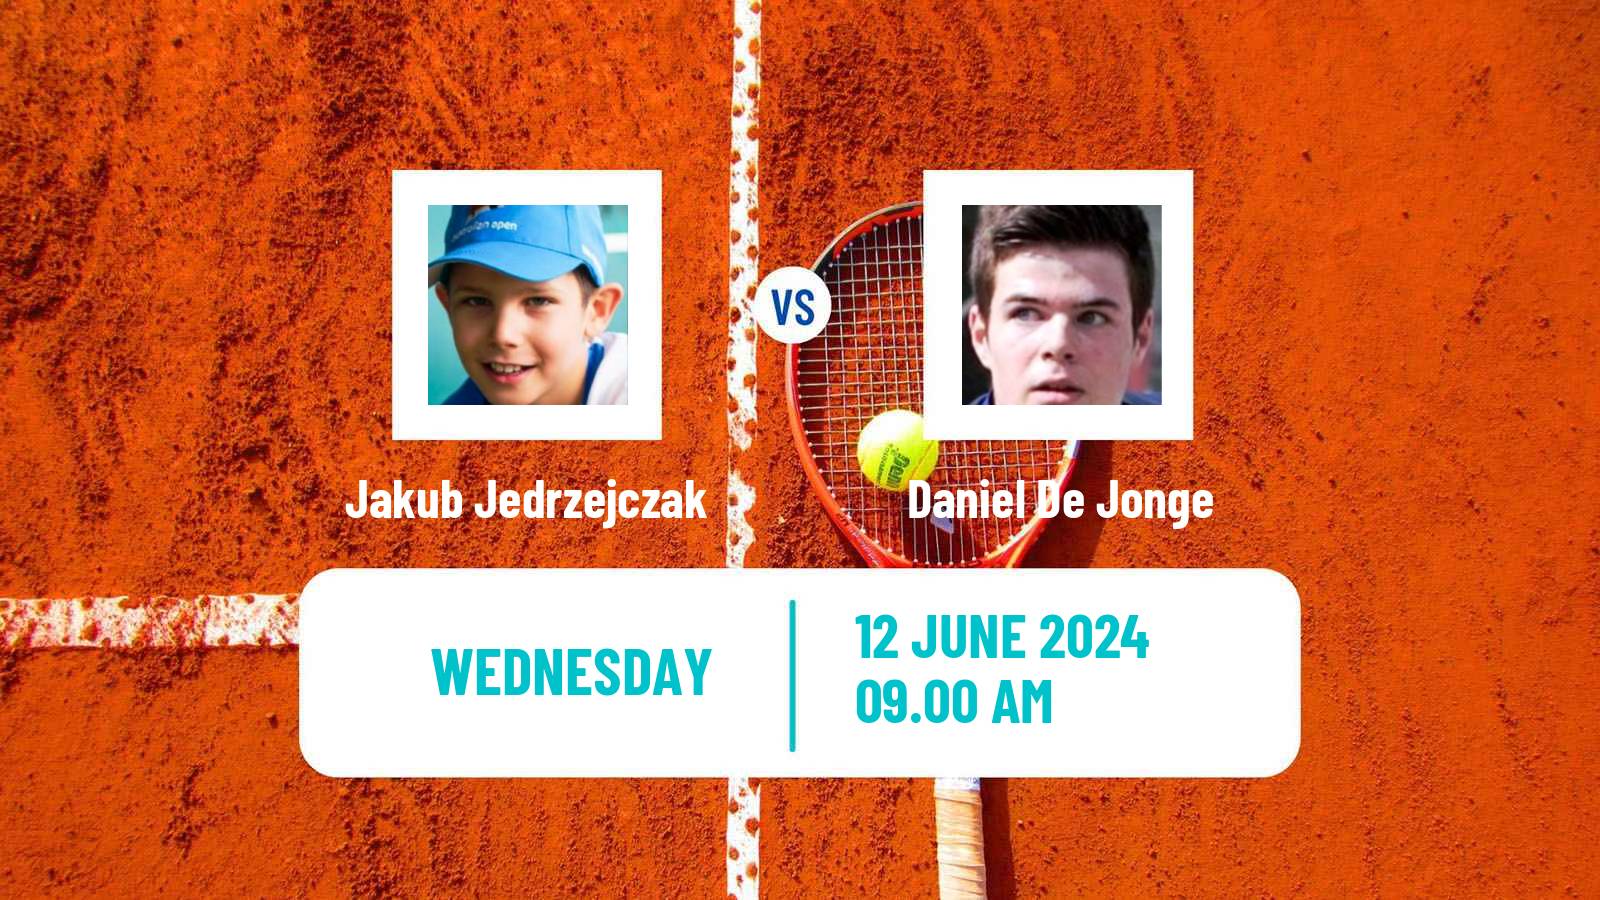 Tennis ITF M15 Koszalin Men Jakub Jedrzejczak - Daniel De Jonge